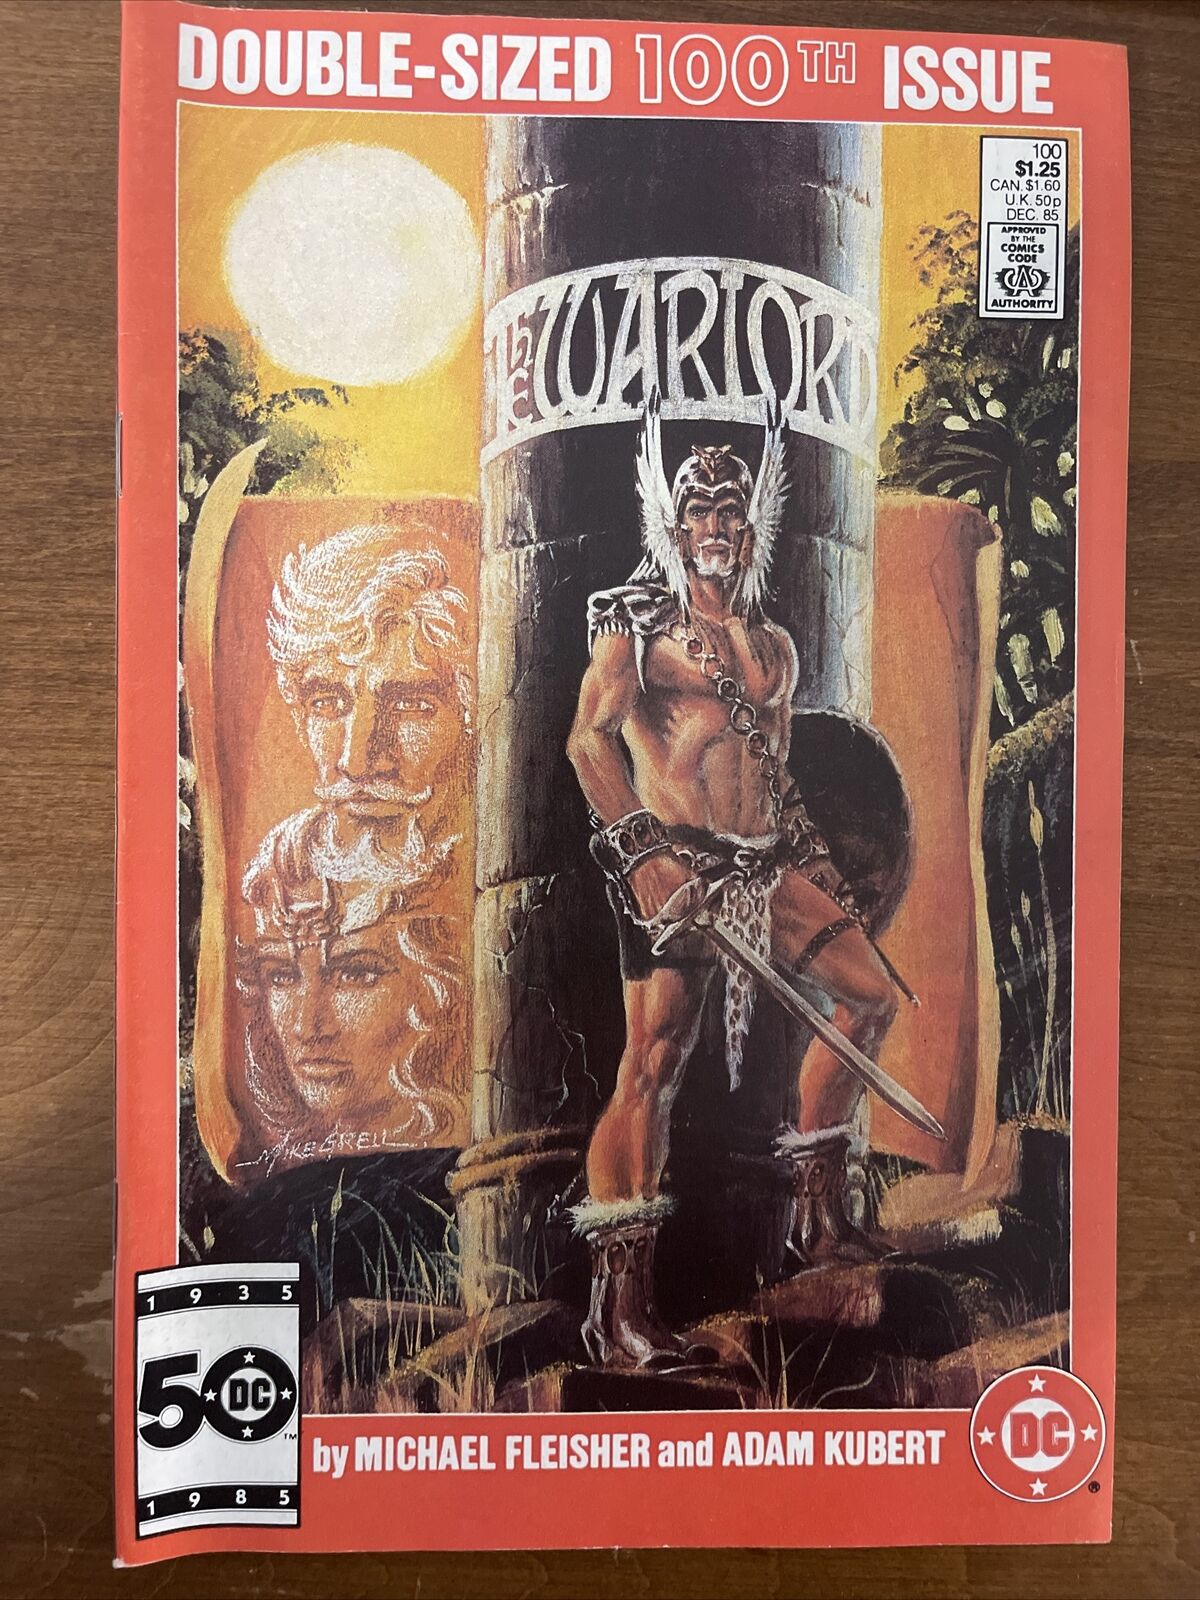 THE WARLORD # 100 DC COMICS 1985 DOUBLE-SIZED COMIC SCI-FI